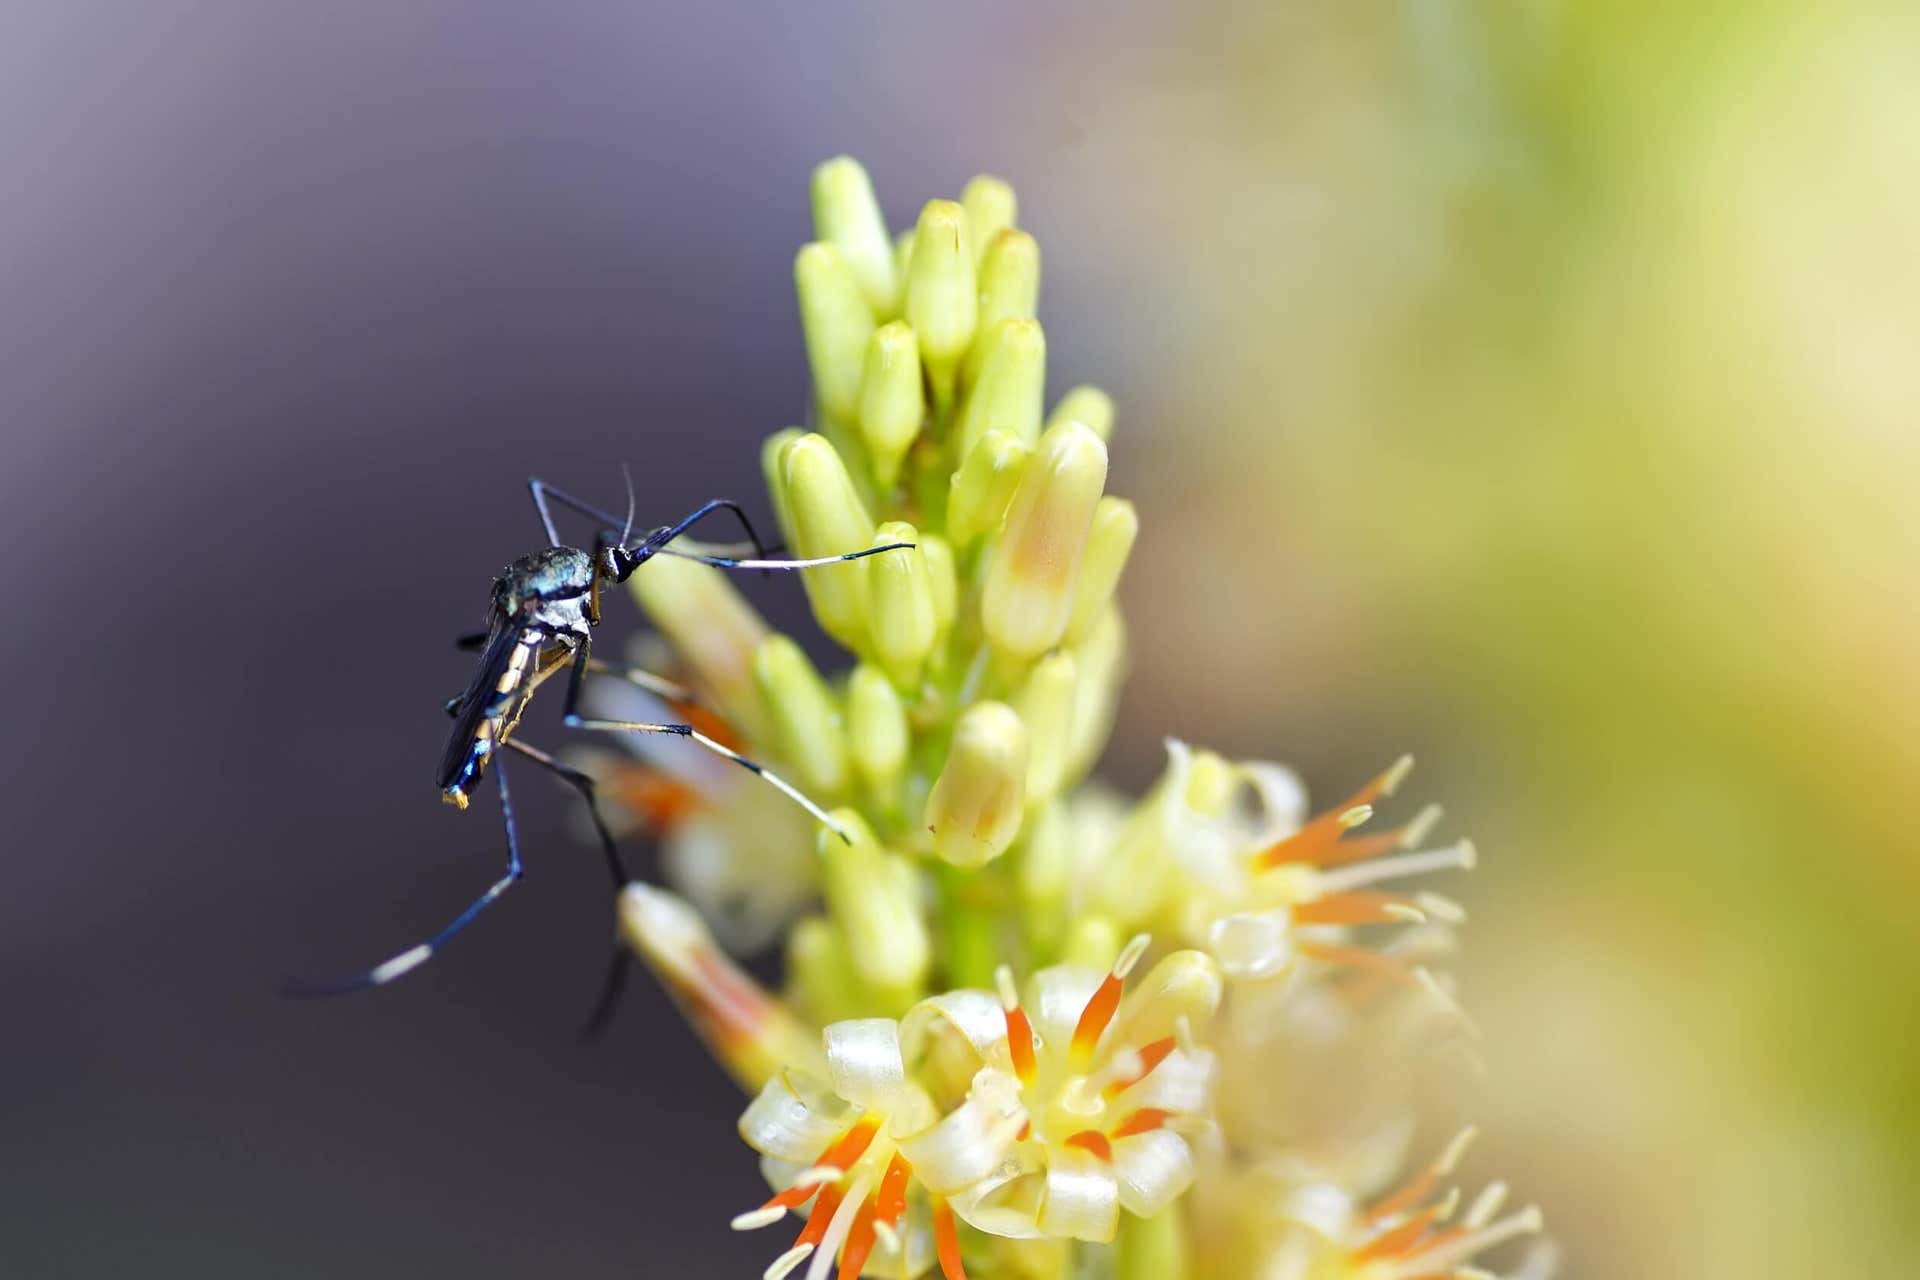 Evita estos 2 tipos de plantas que atraen los mosquitos si eres propenso a picaduras